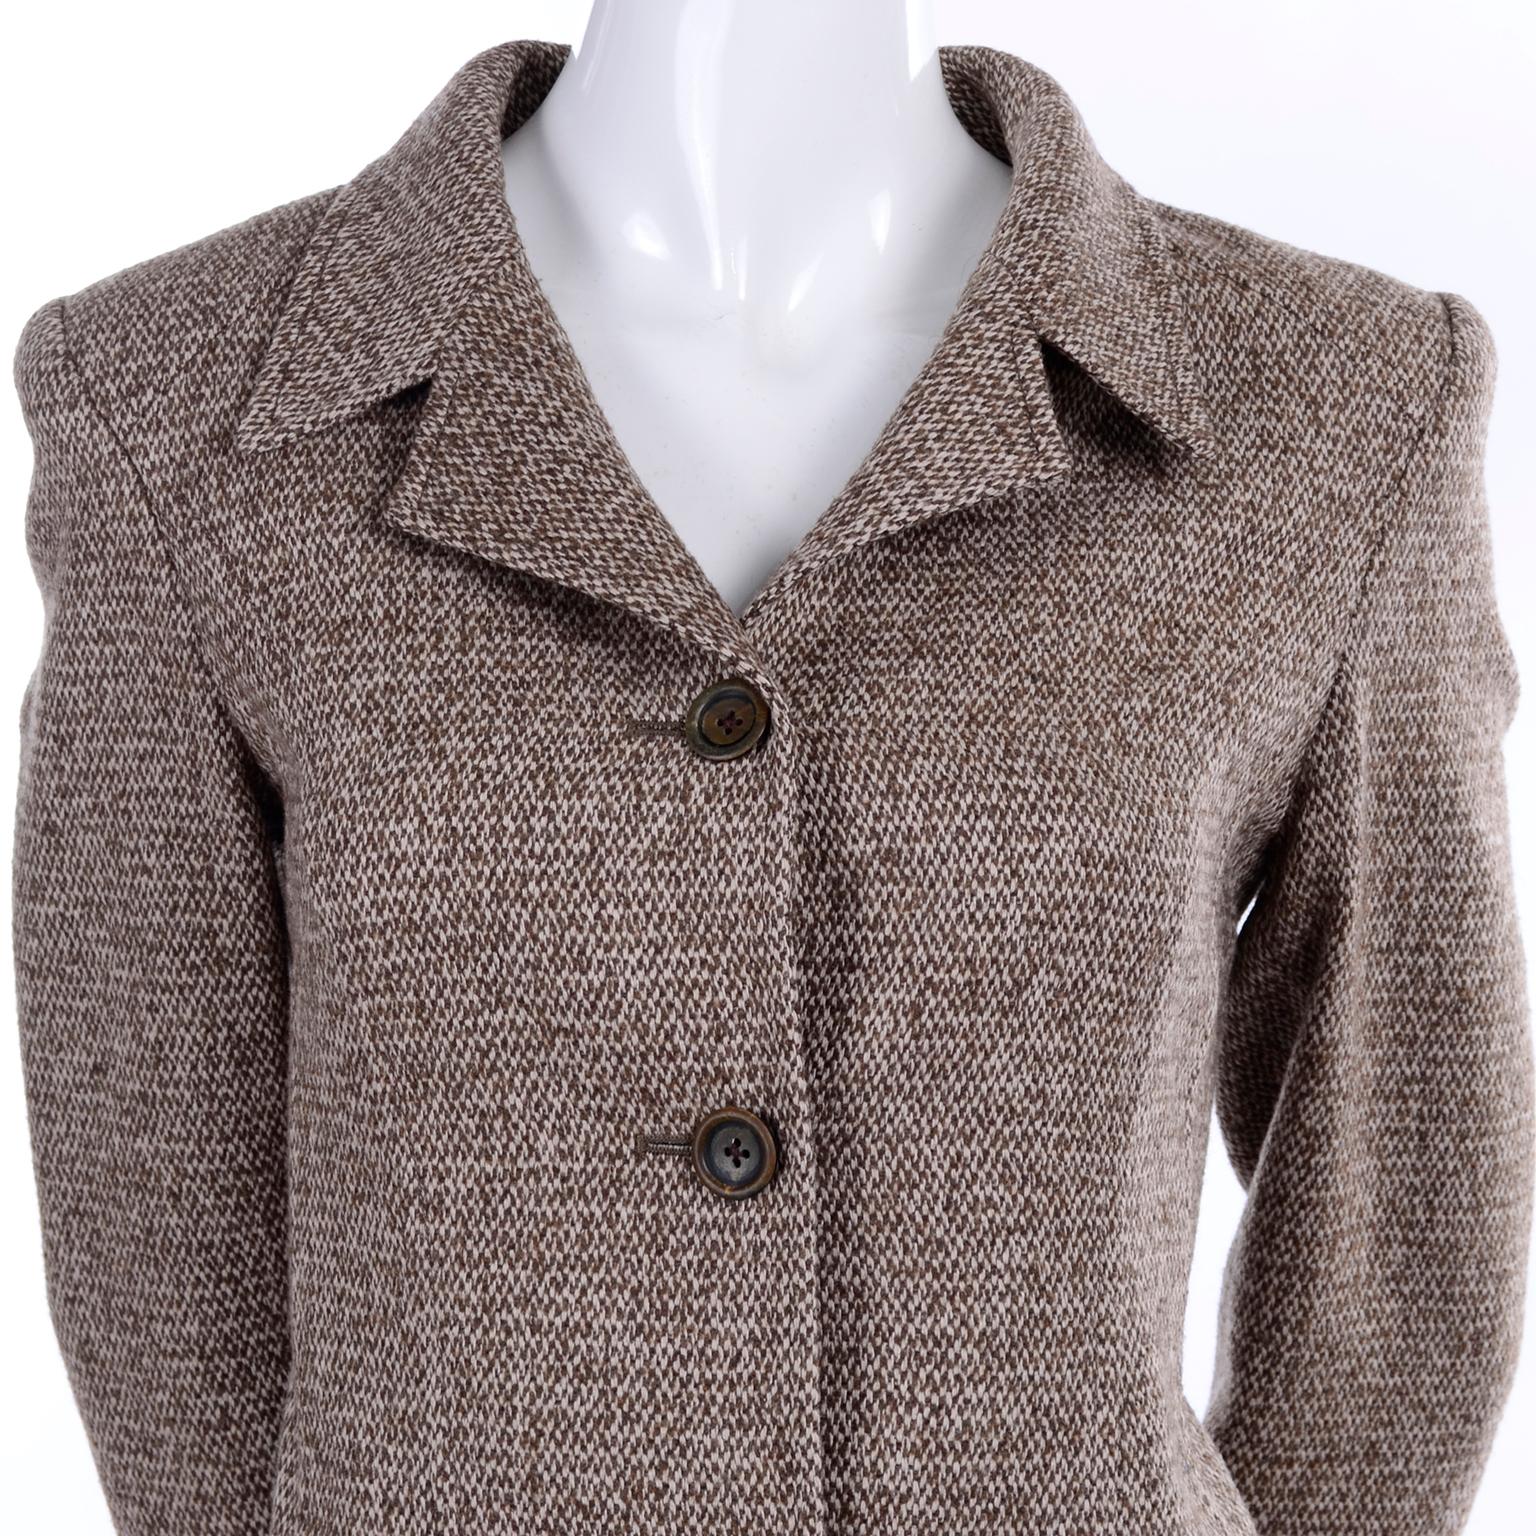 Oscar de la Renta Brown Tweed Blazer Jacket With Pleated Back Demi Peplum Size 8 2